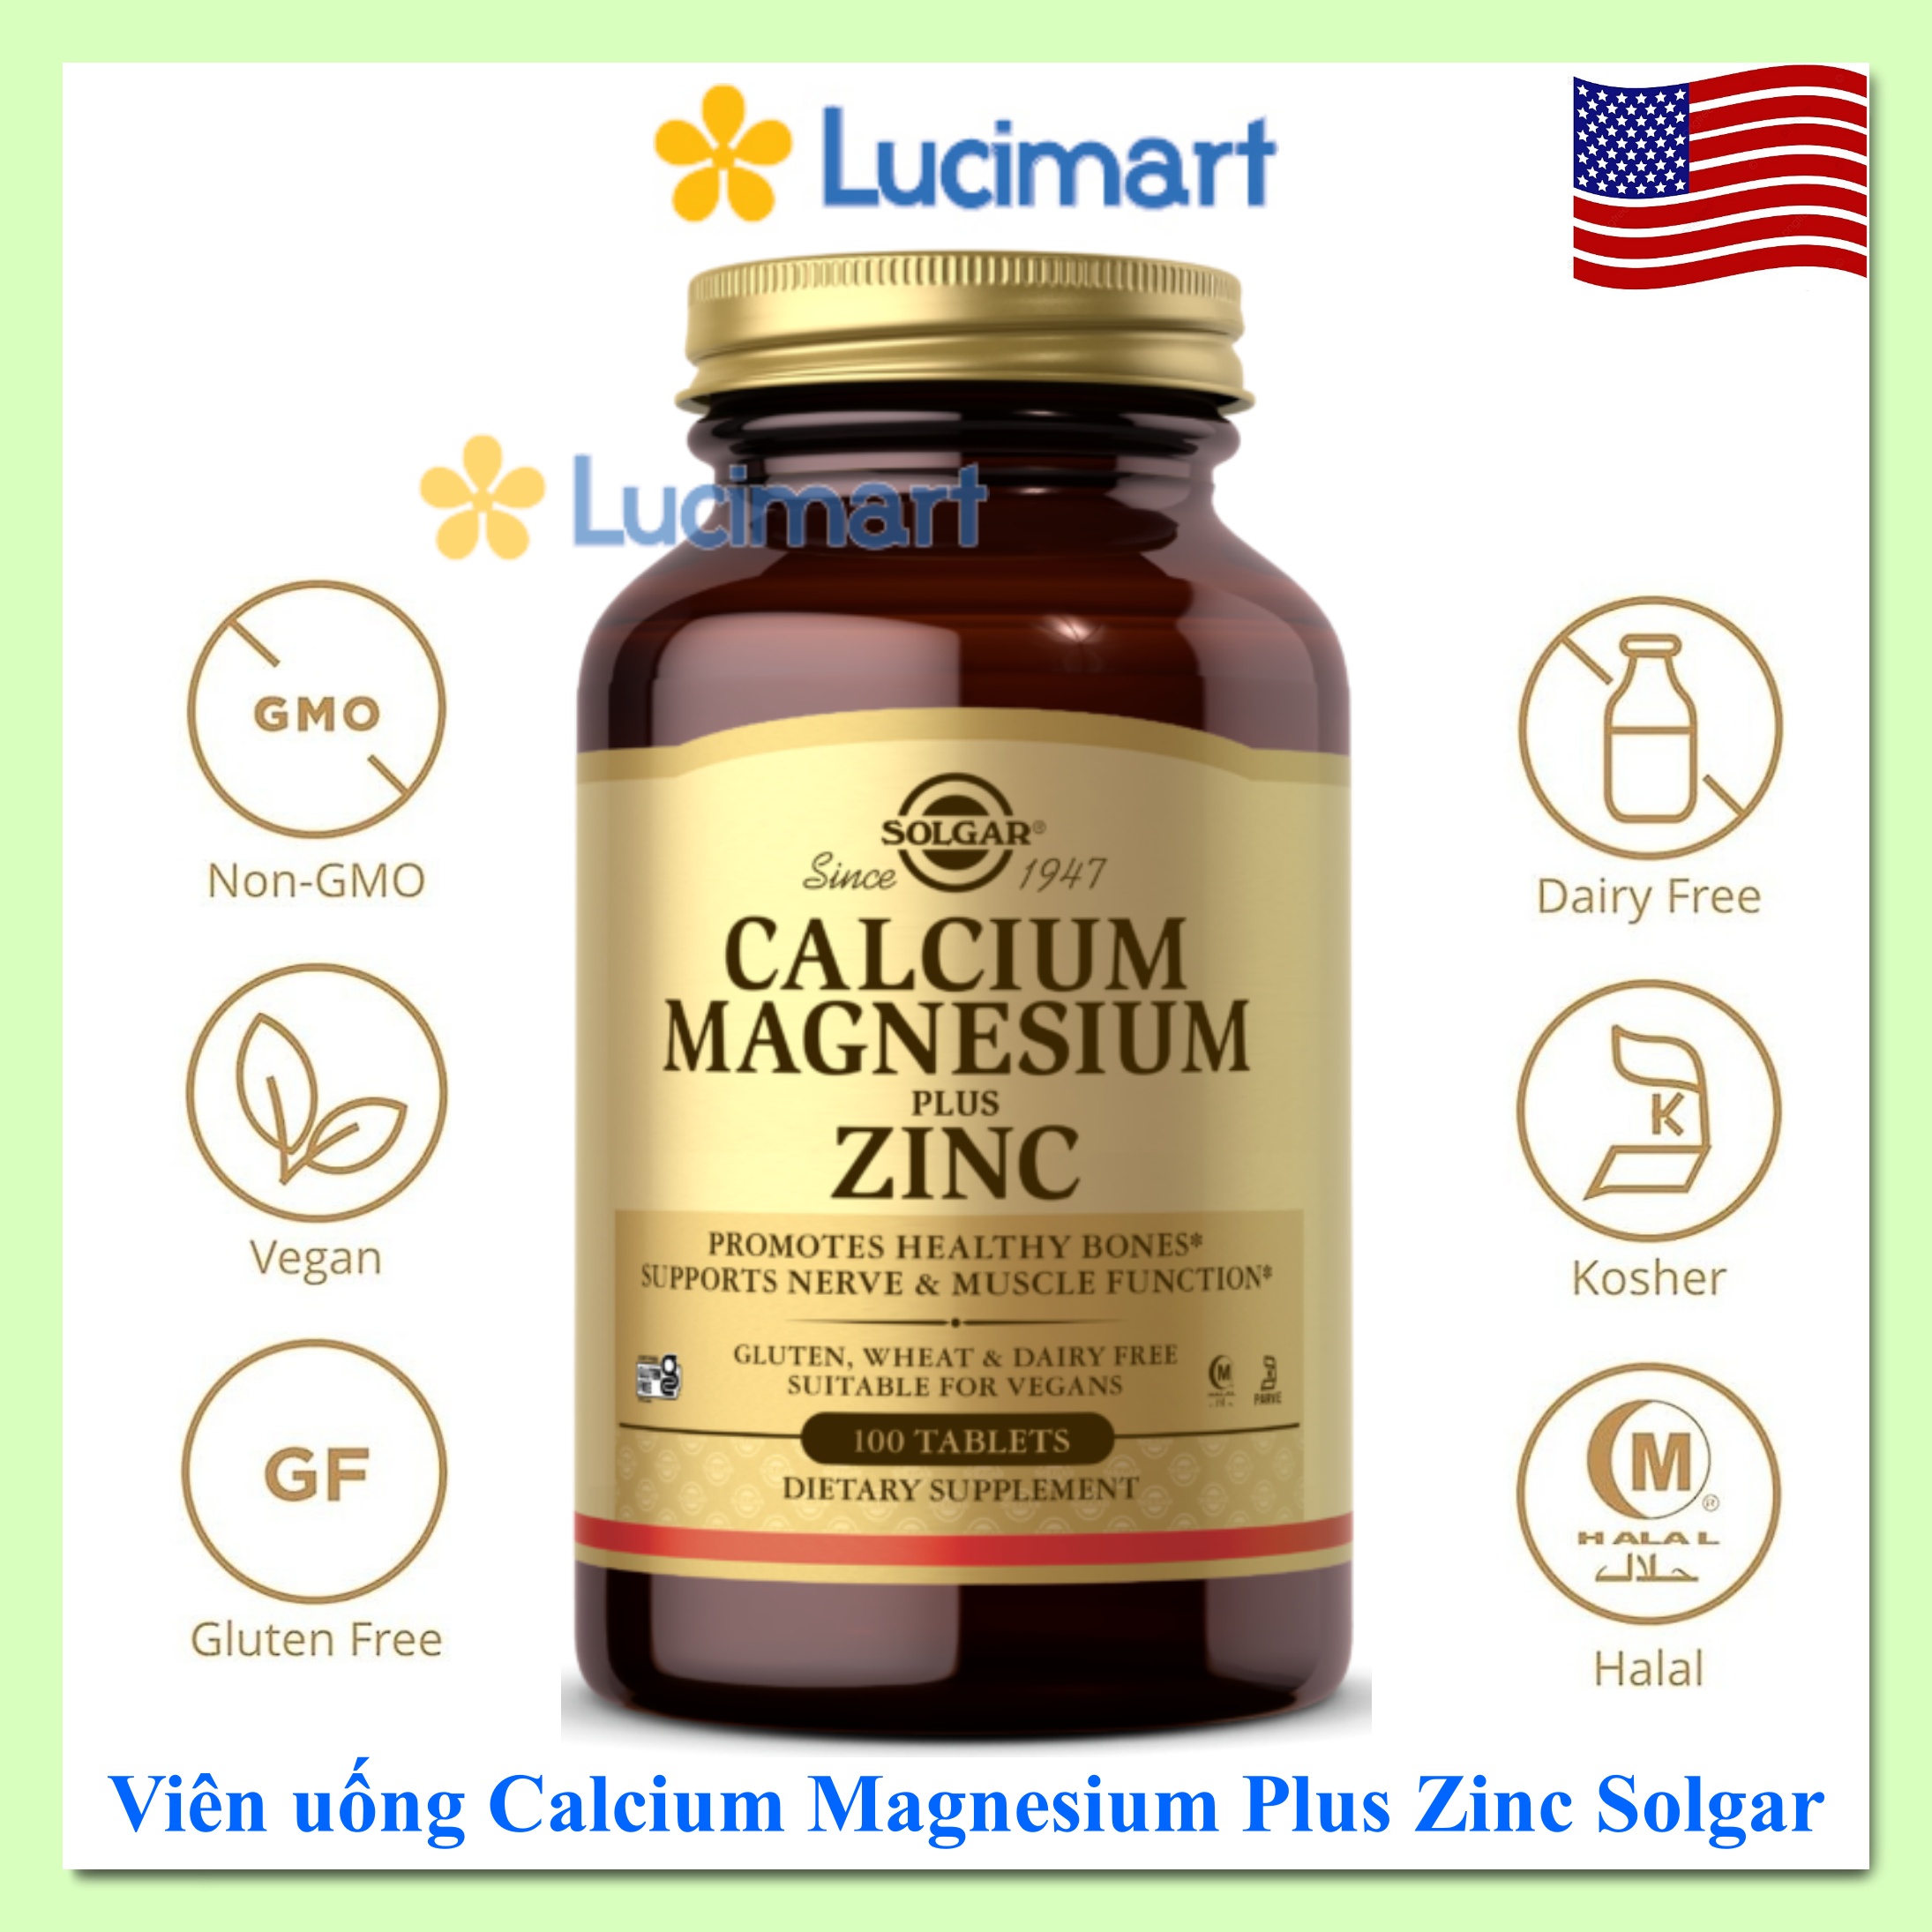 Viên uống Calcium Magnesium Plus Zinc Solgar hũ 100 viên Hàng Mỹ hạn dùng